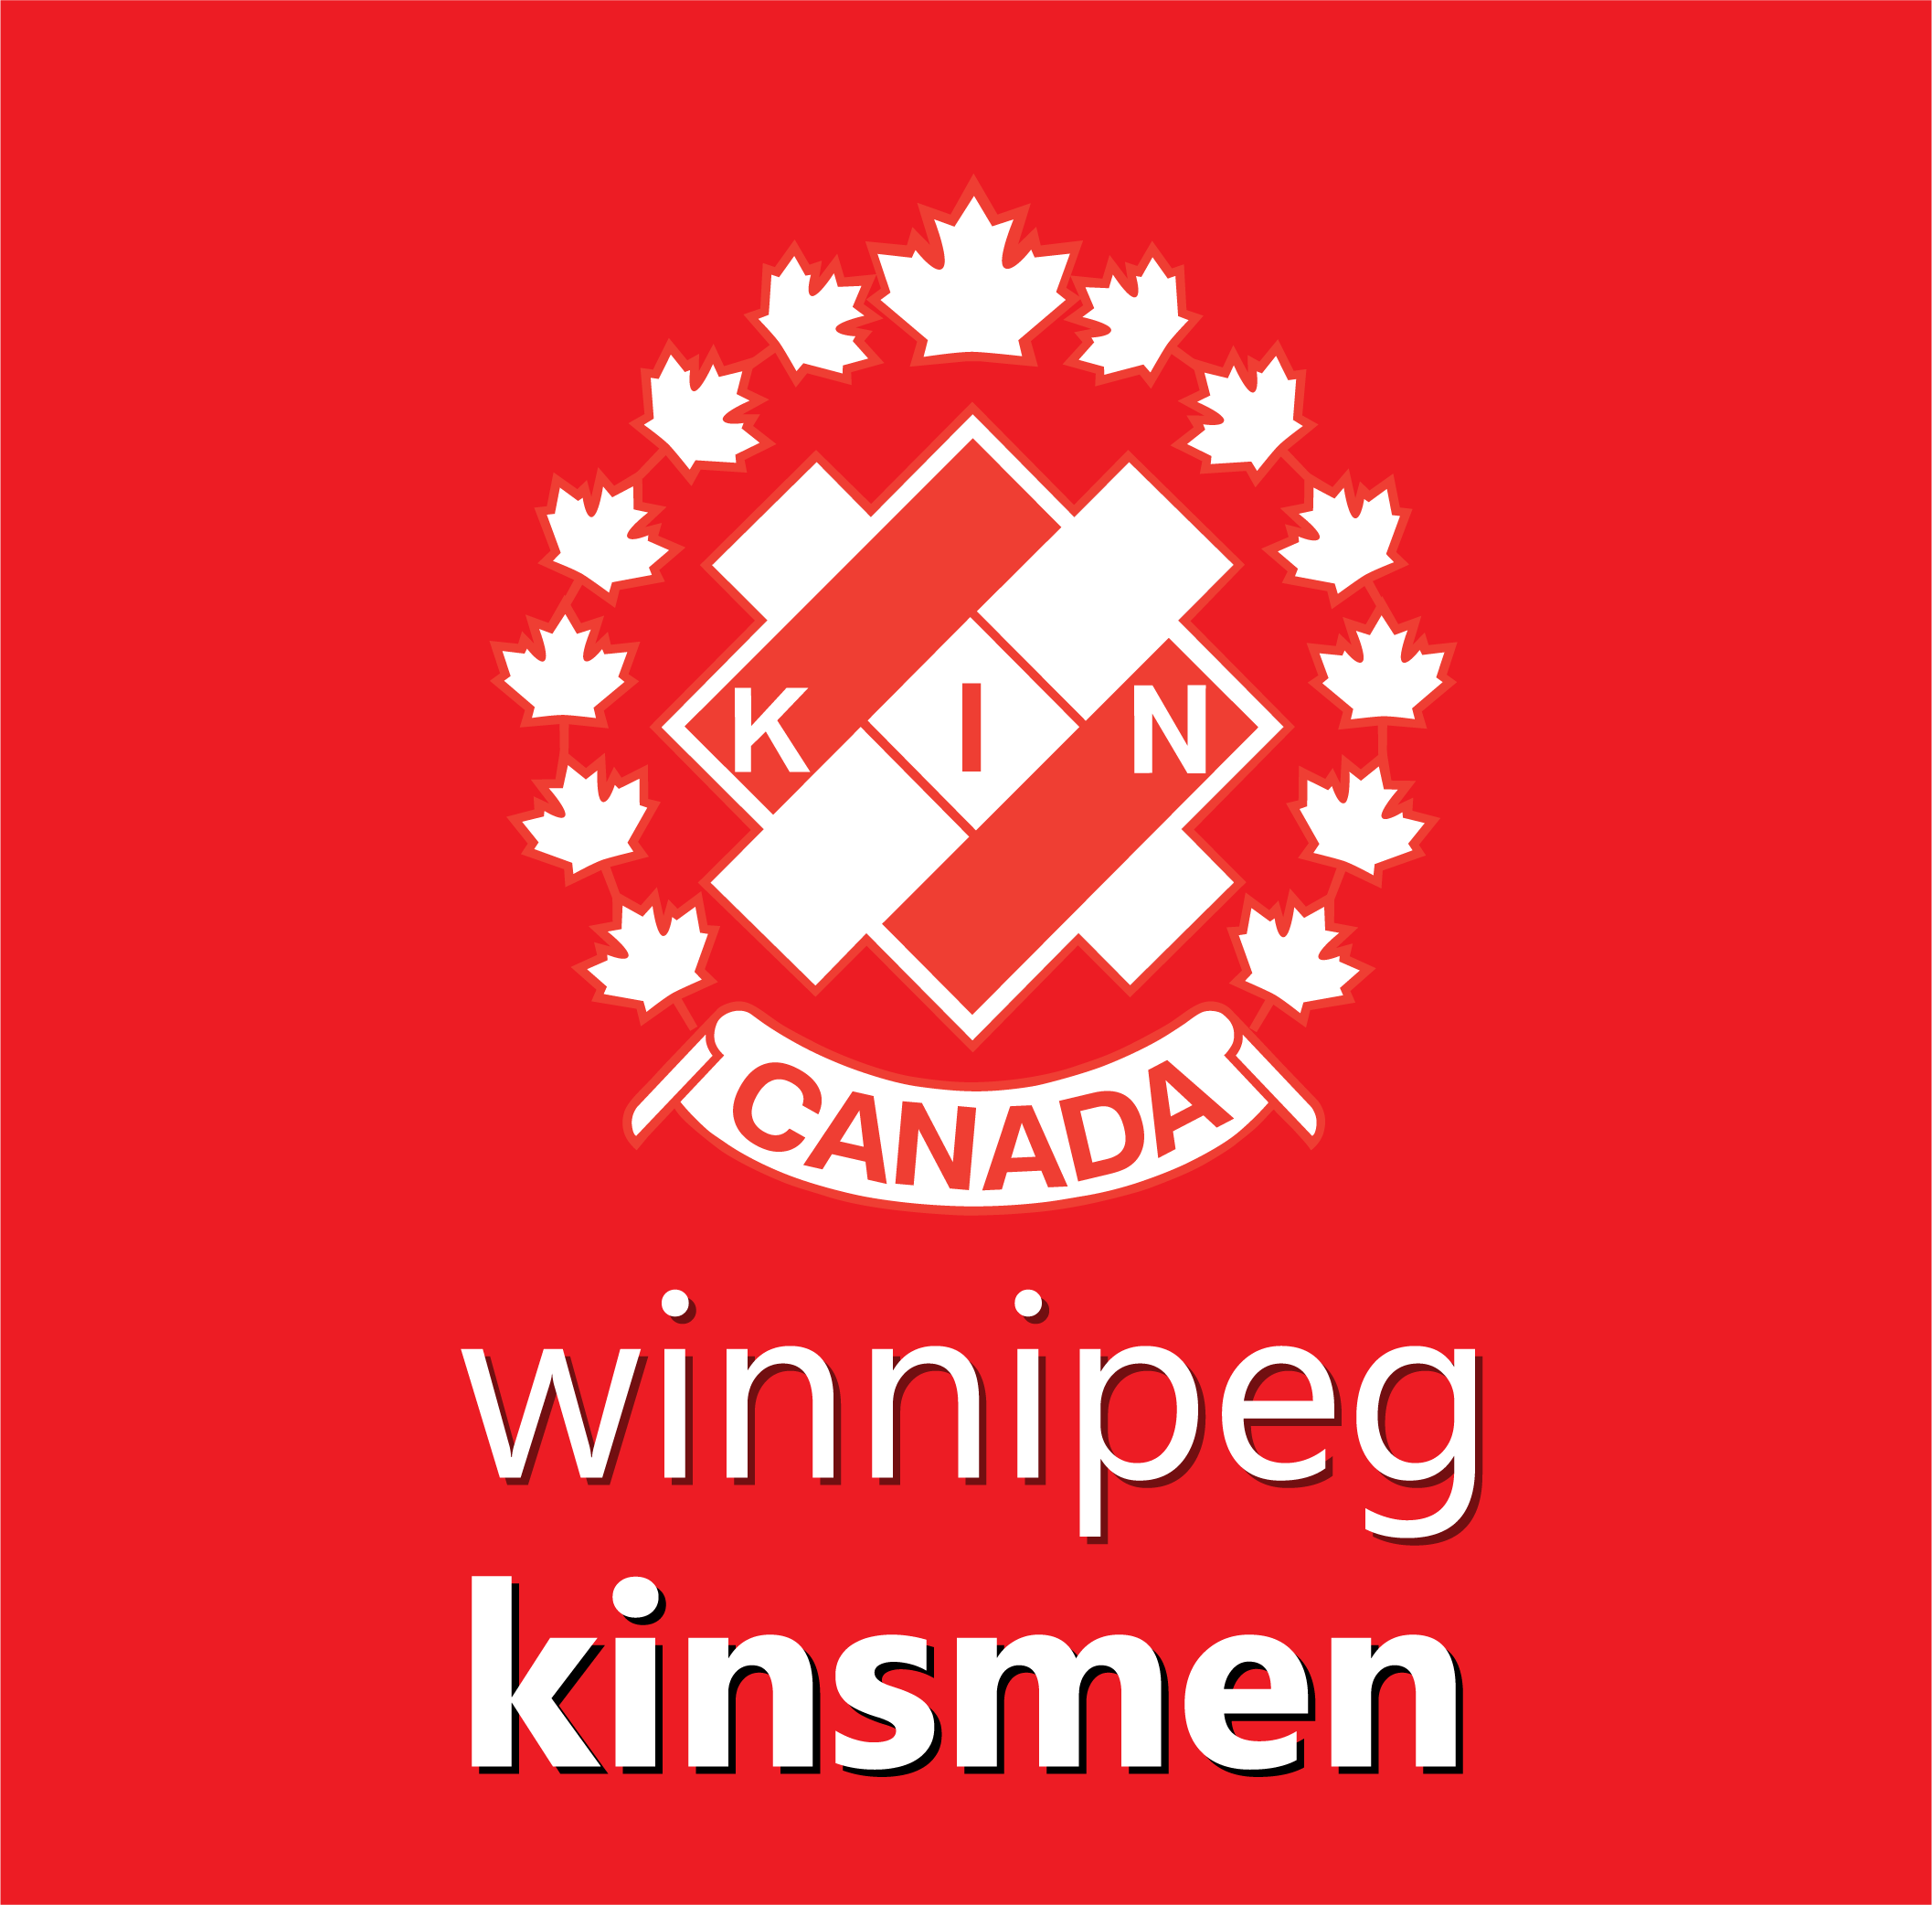 Winnipeg Kinsmen  - White on Red logo (Stacked).png (197 KB)